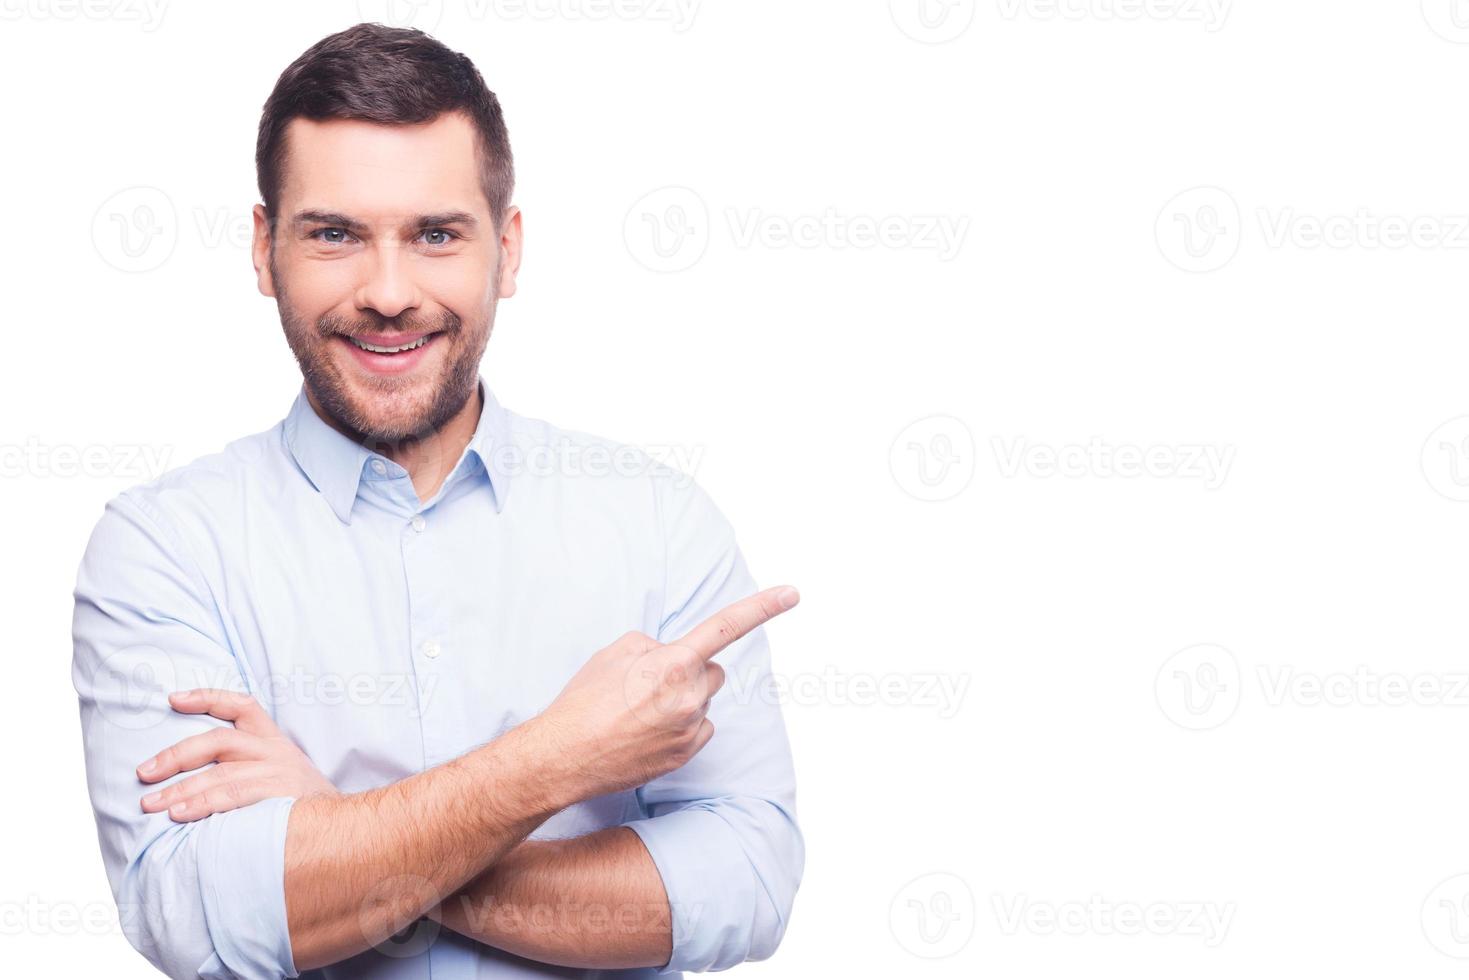 affärsman pekande kopia Plats. stilig ung man i skjorta ser på kamera och pekande bort medan stående mot vit bakgrund foto